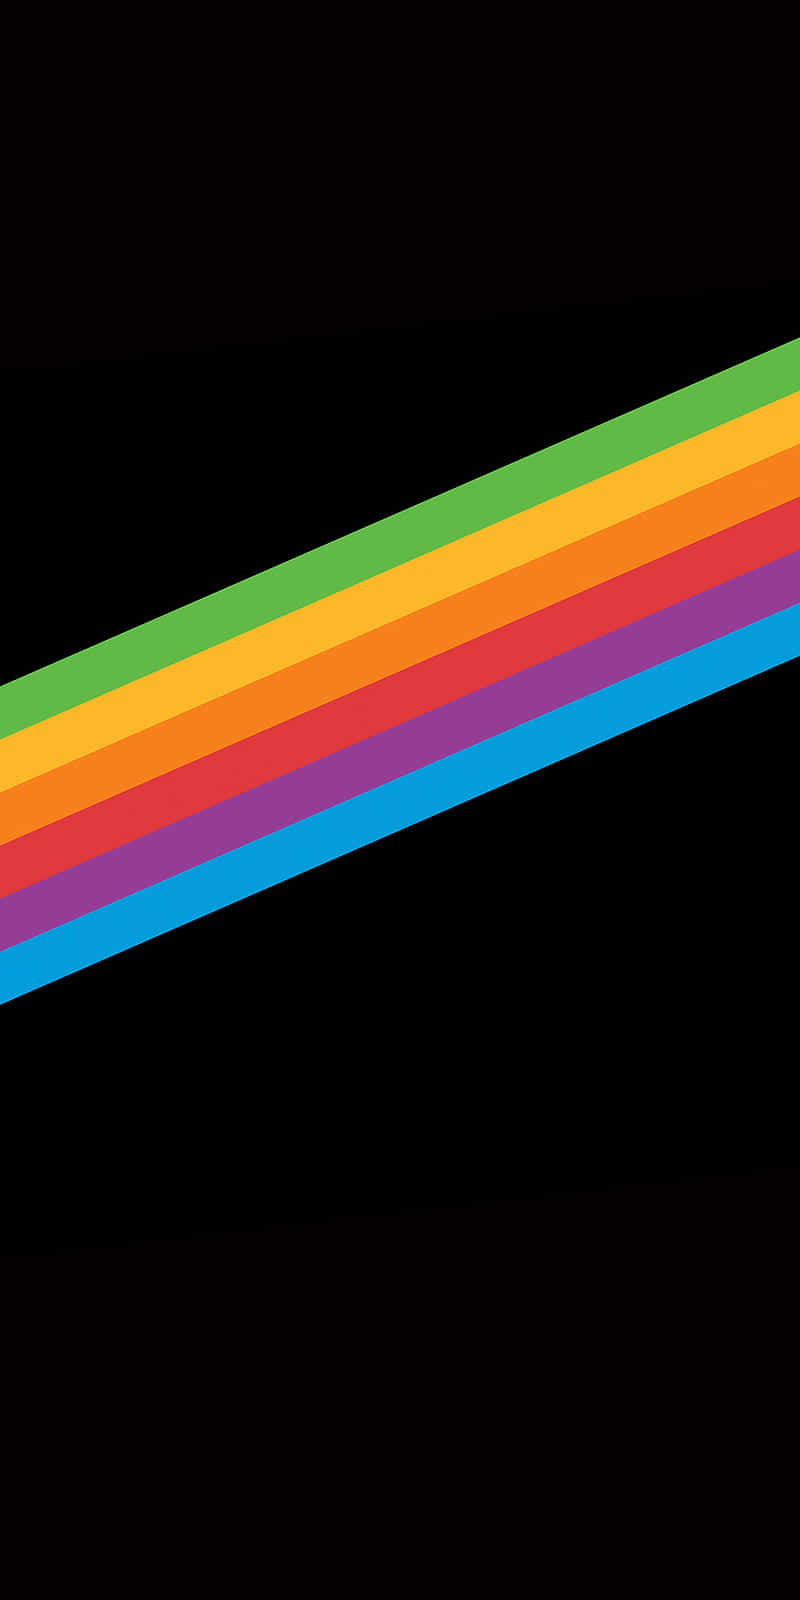 Rainbow Wallpapers - Top 25 Best Rainbow Backgrounds Download